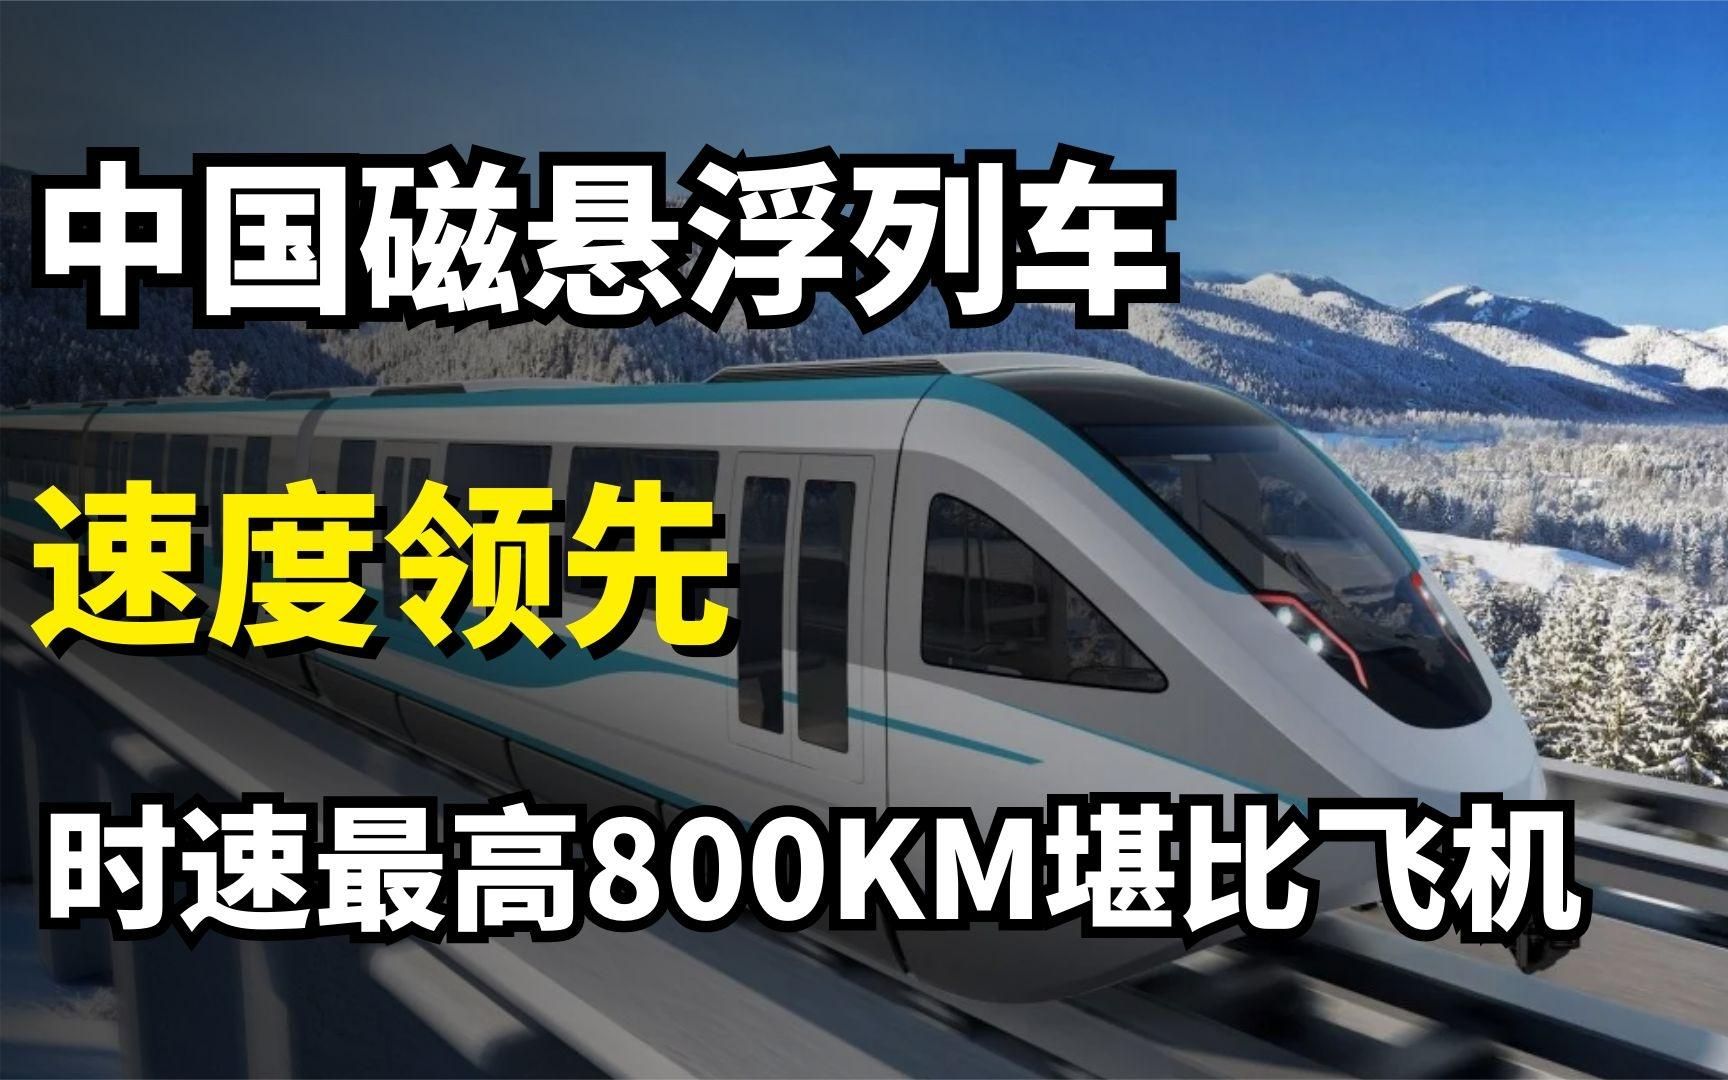 中国速度世界领跑!磁悬浮列车速度堪比地上飞机